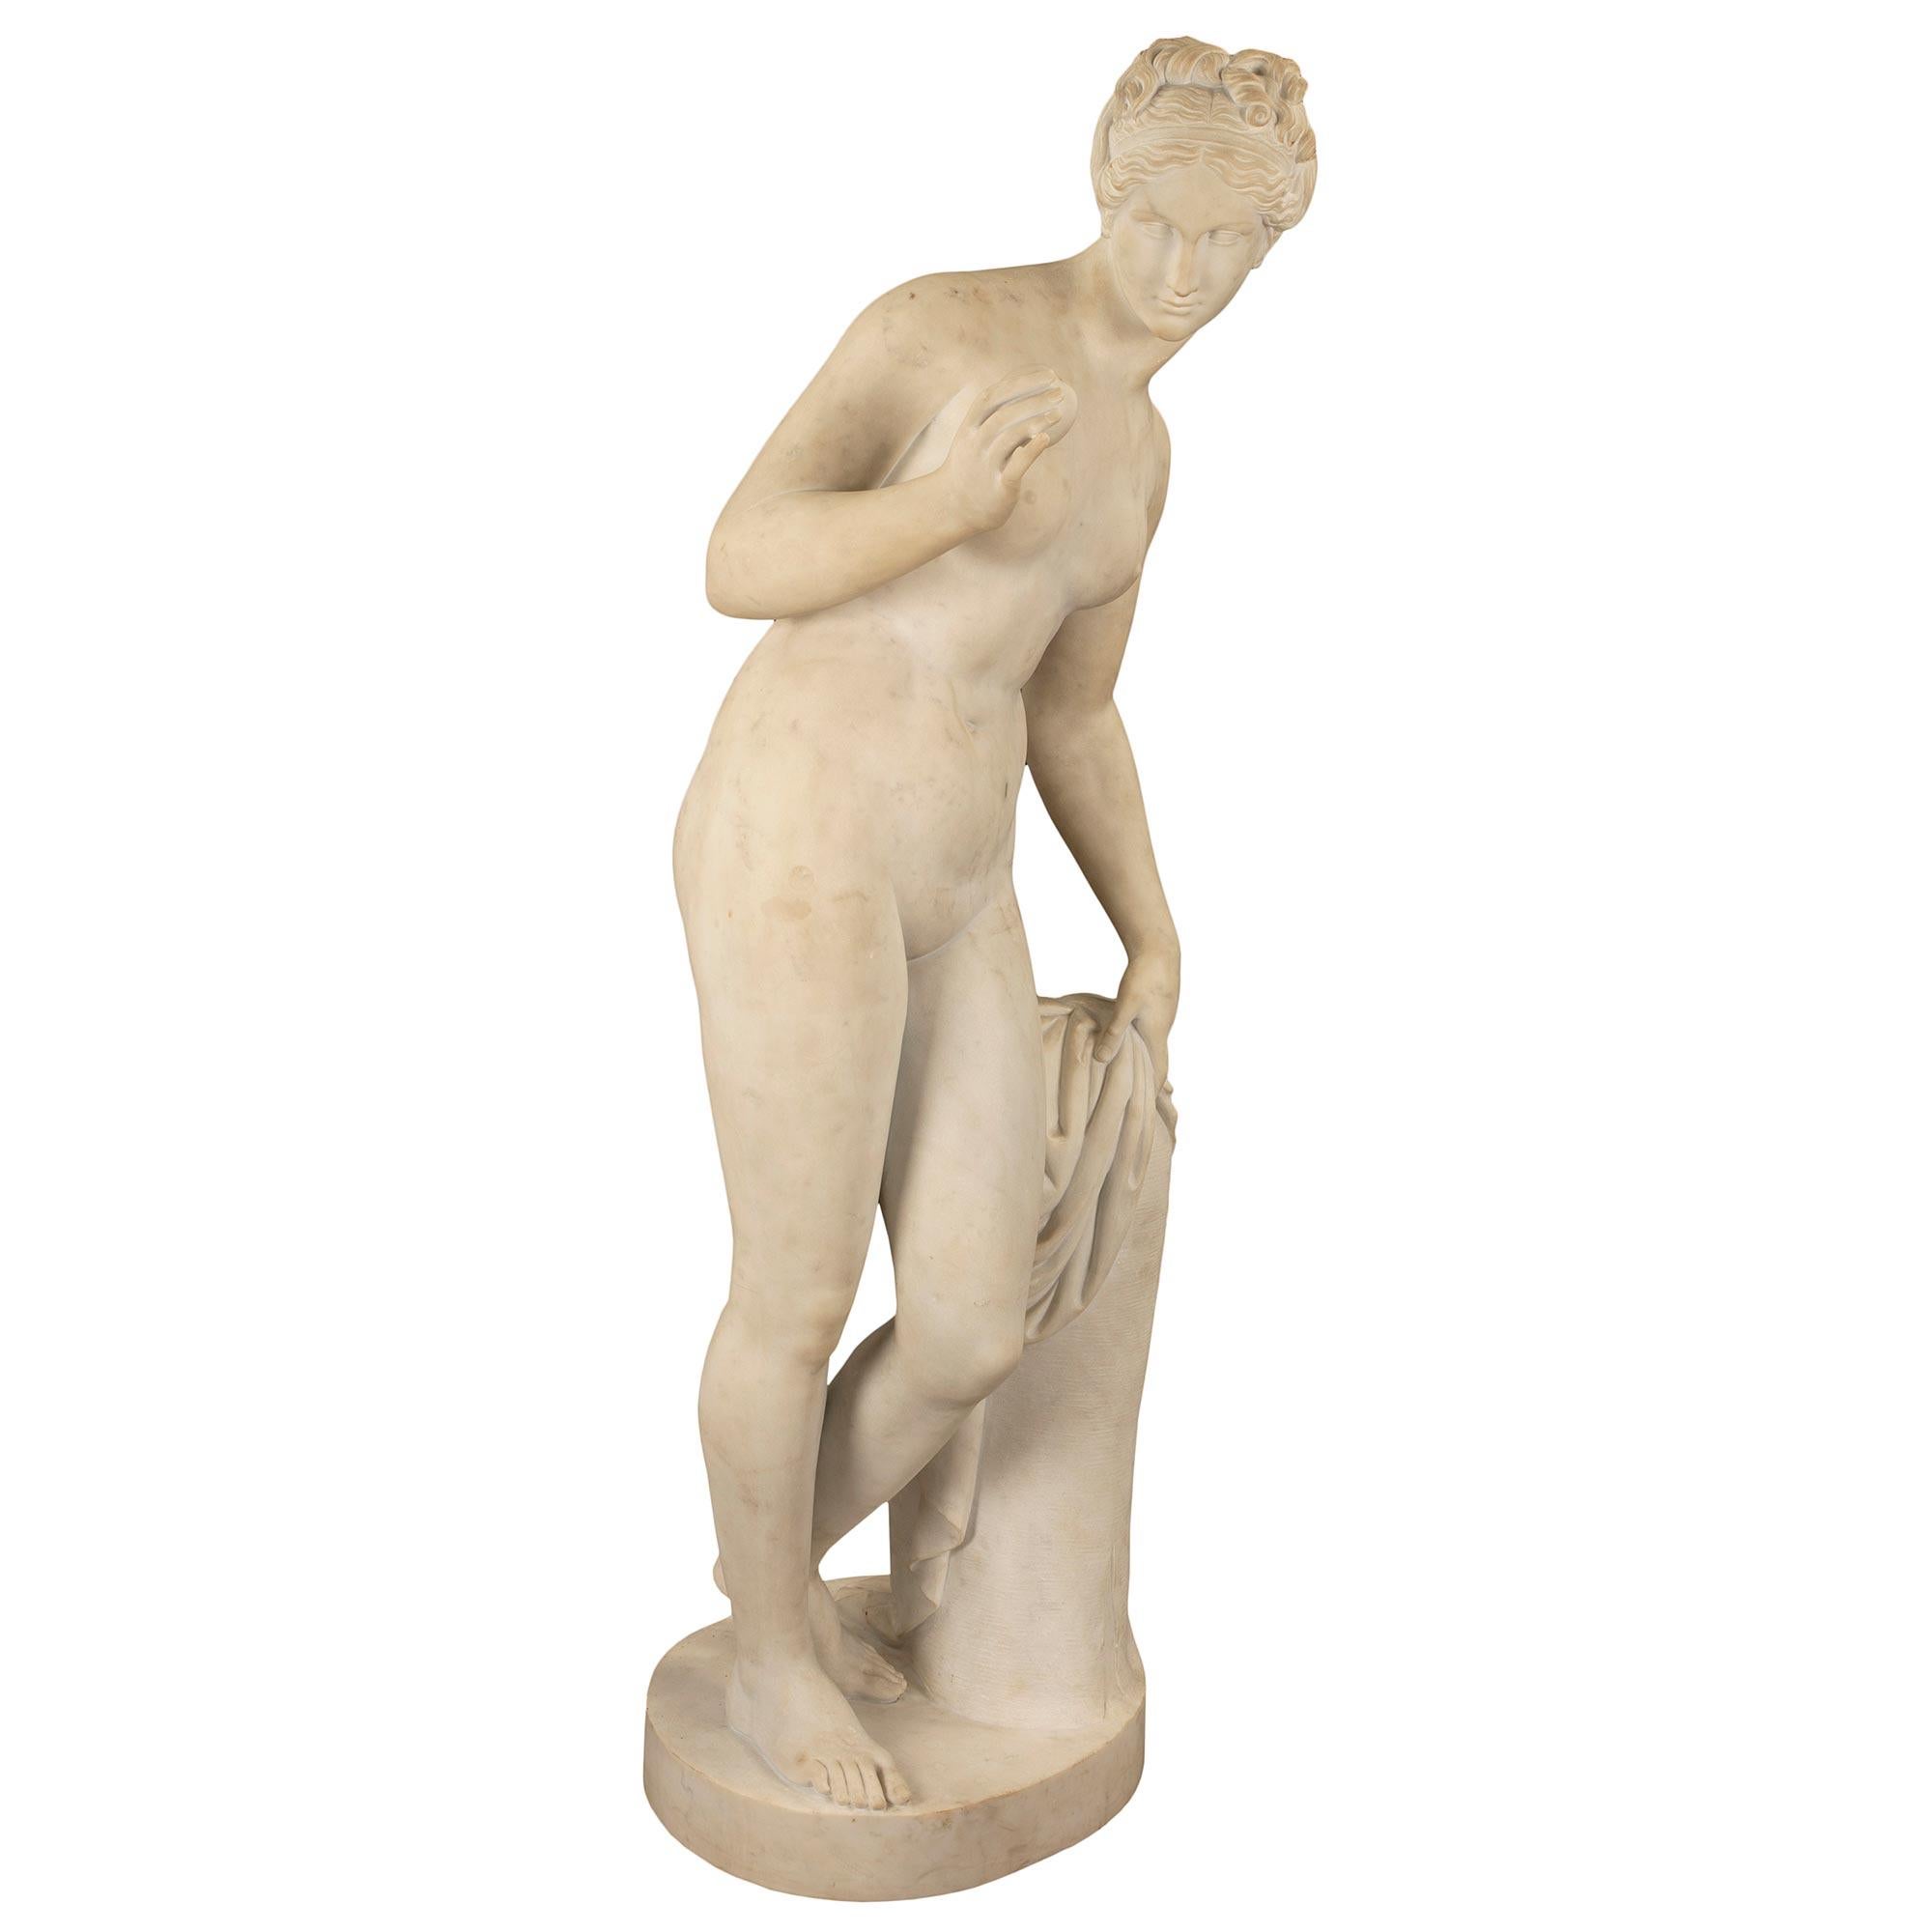 Statue de Vénus en marbre blanc de Carrare, de haute qualité, datant du milieu du XIXe siècle. Cette statue presque grandeur nature représente la déesse appuyée sur une souche d'arbre recouverte d'un morceau de tissu. Elle regarde une pomme qu'elle